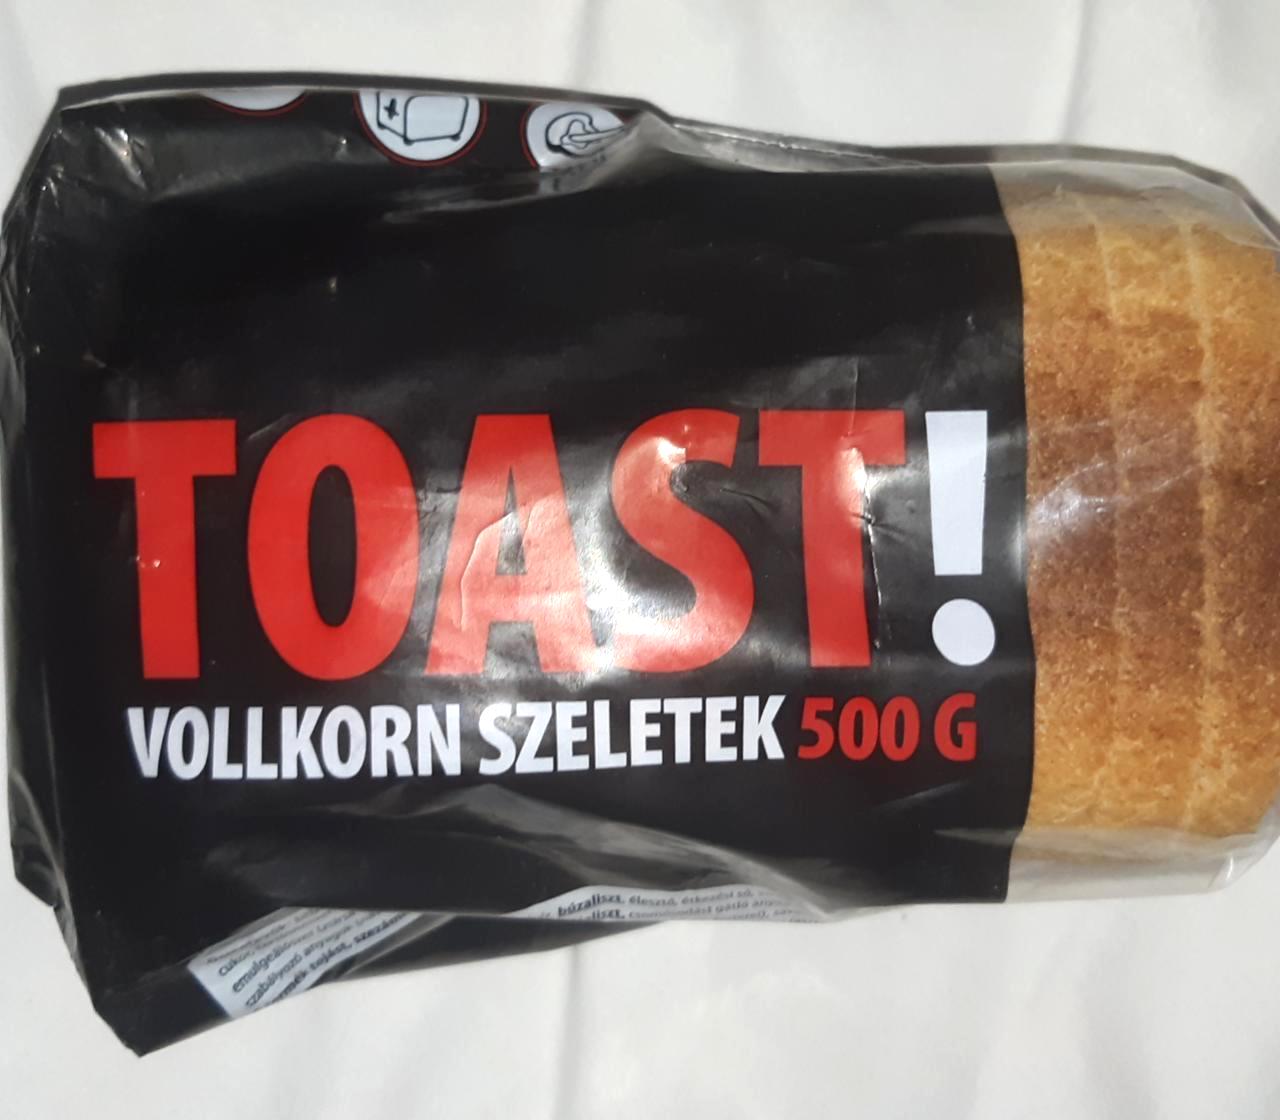 Képek - Teljes kiőrlésű toast kenyér